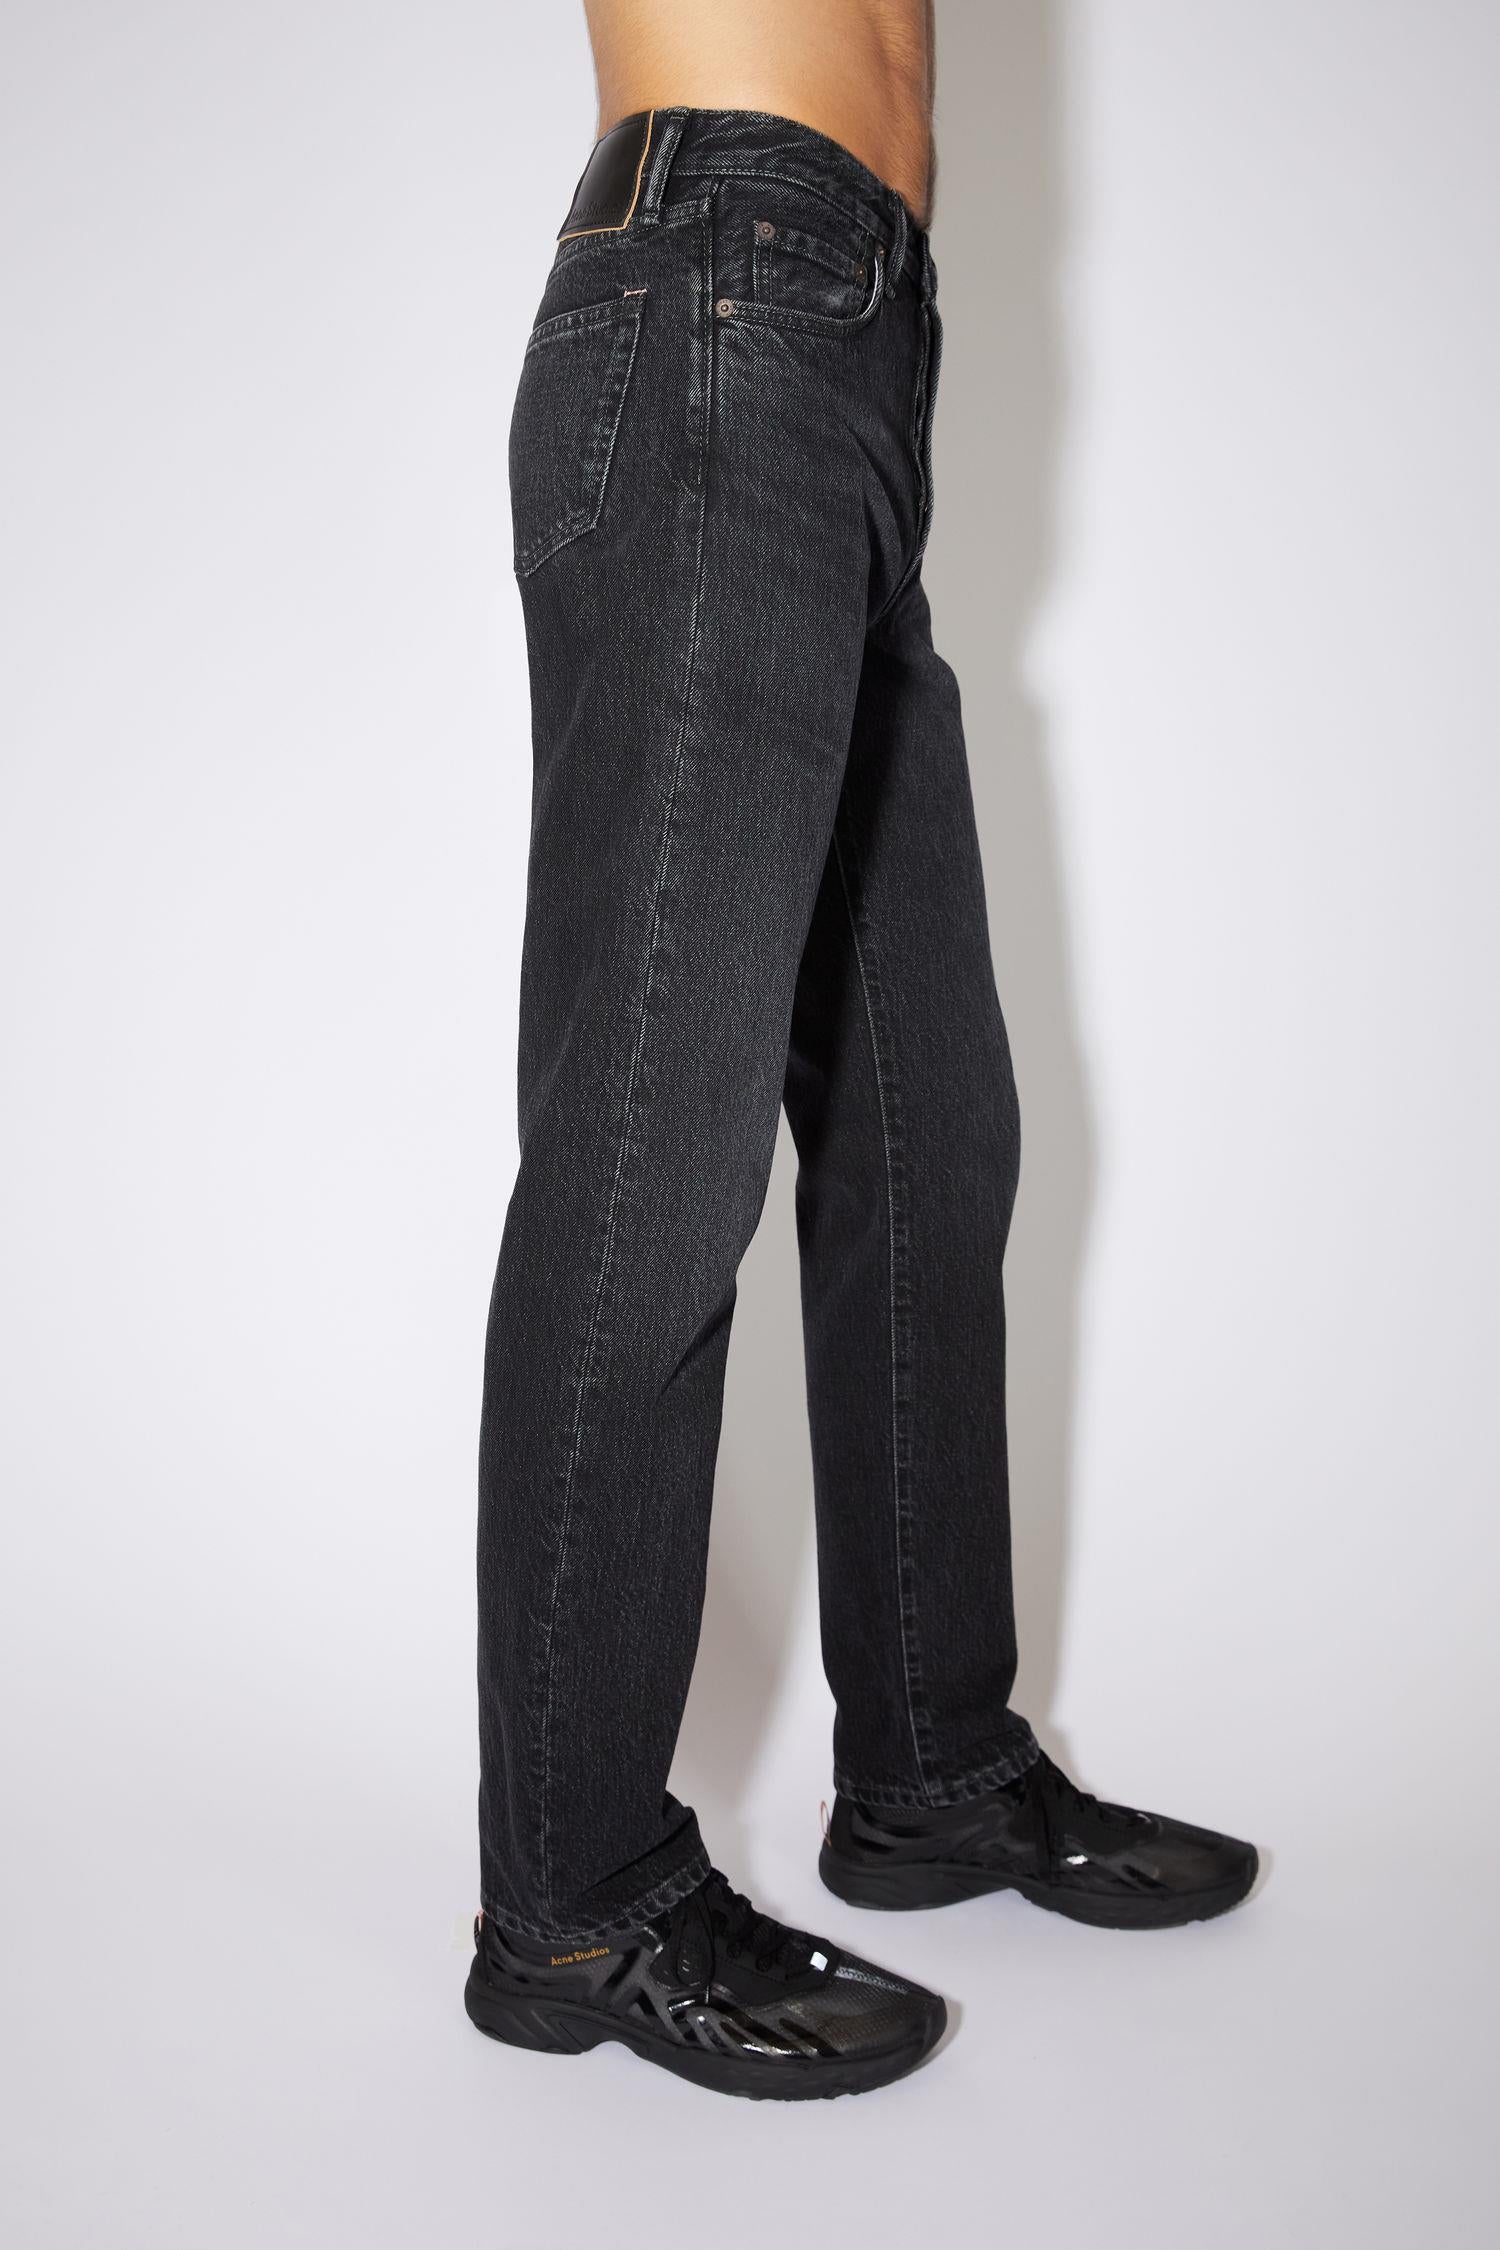 Acne Studios Jeans Jeans | 1996 Vintage Black